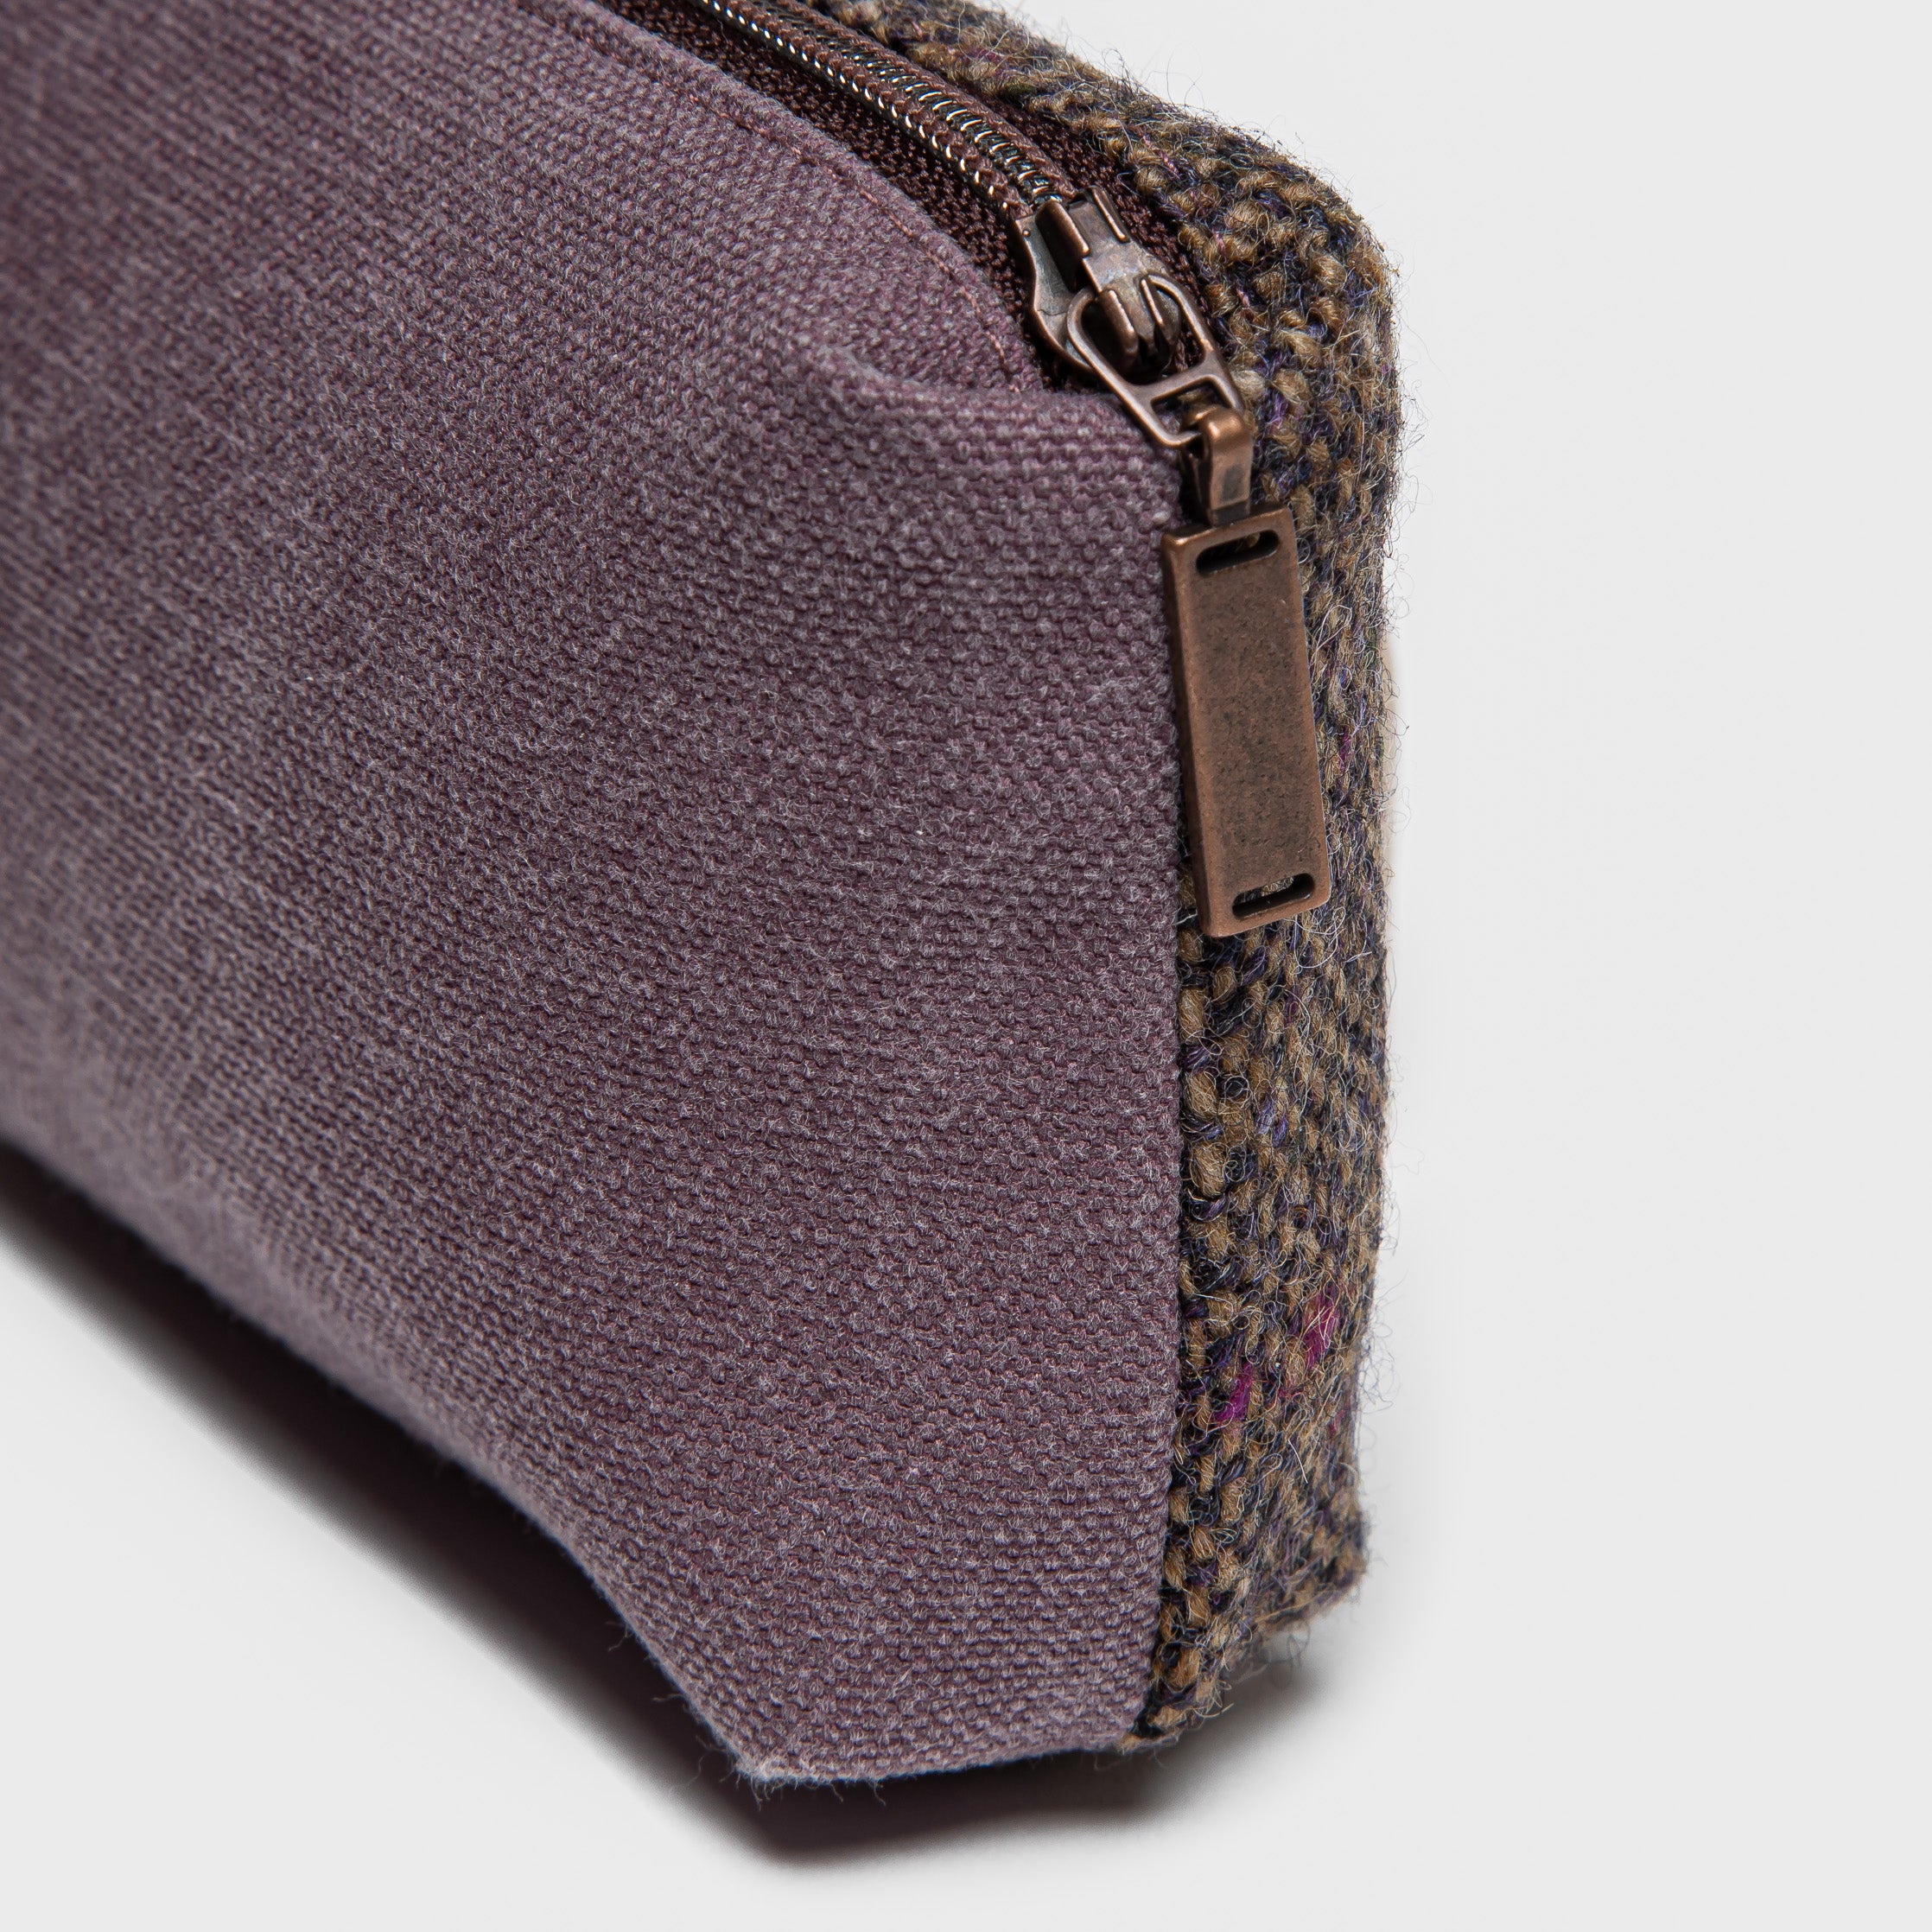 Cloud7: Little Tweed Bag in Purple